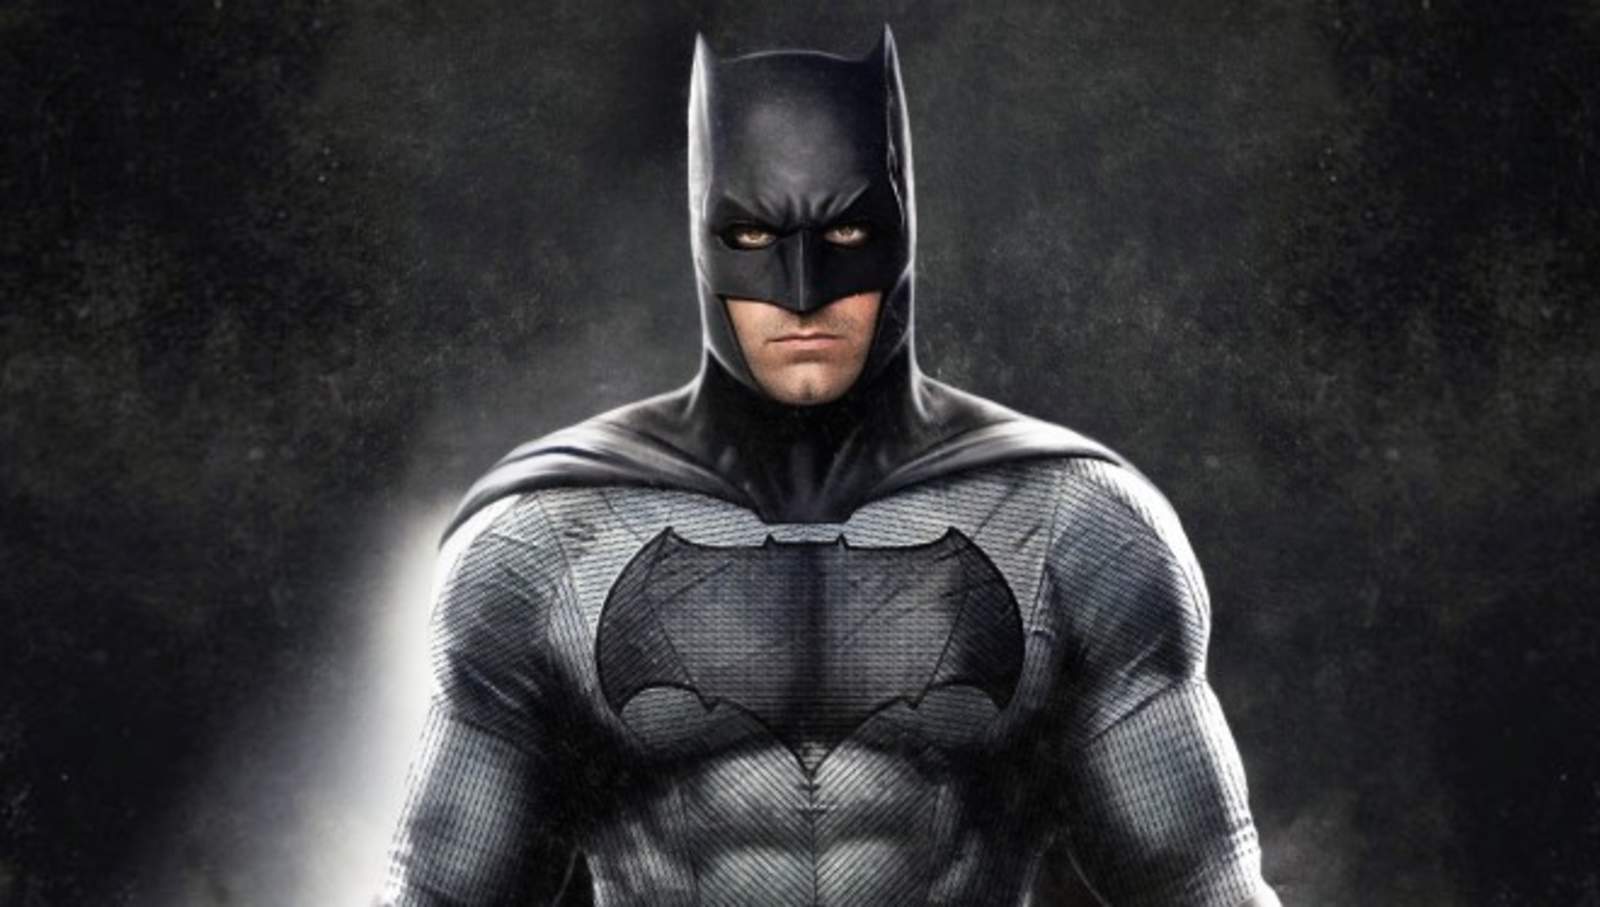 La verosimilitud de Batman puede deberse, tal y como han apuntado muchos a lo largo de la historia, a que es un superhéroe sin superpoderes. (ESPECIAL)